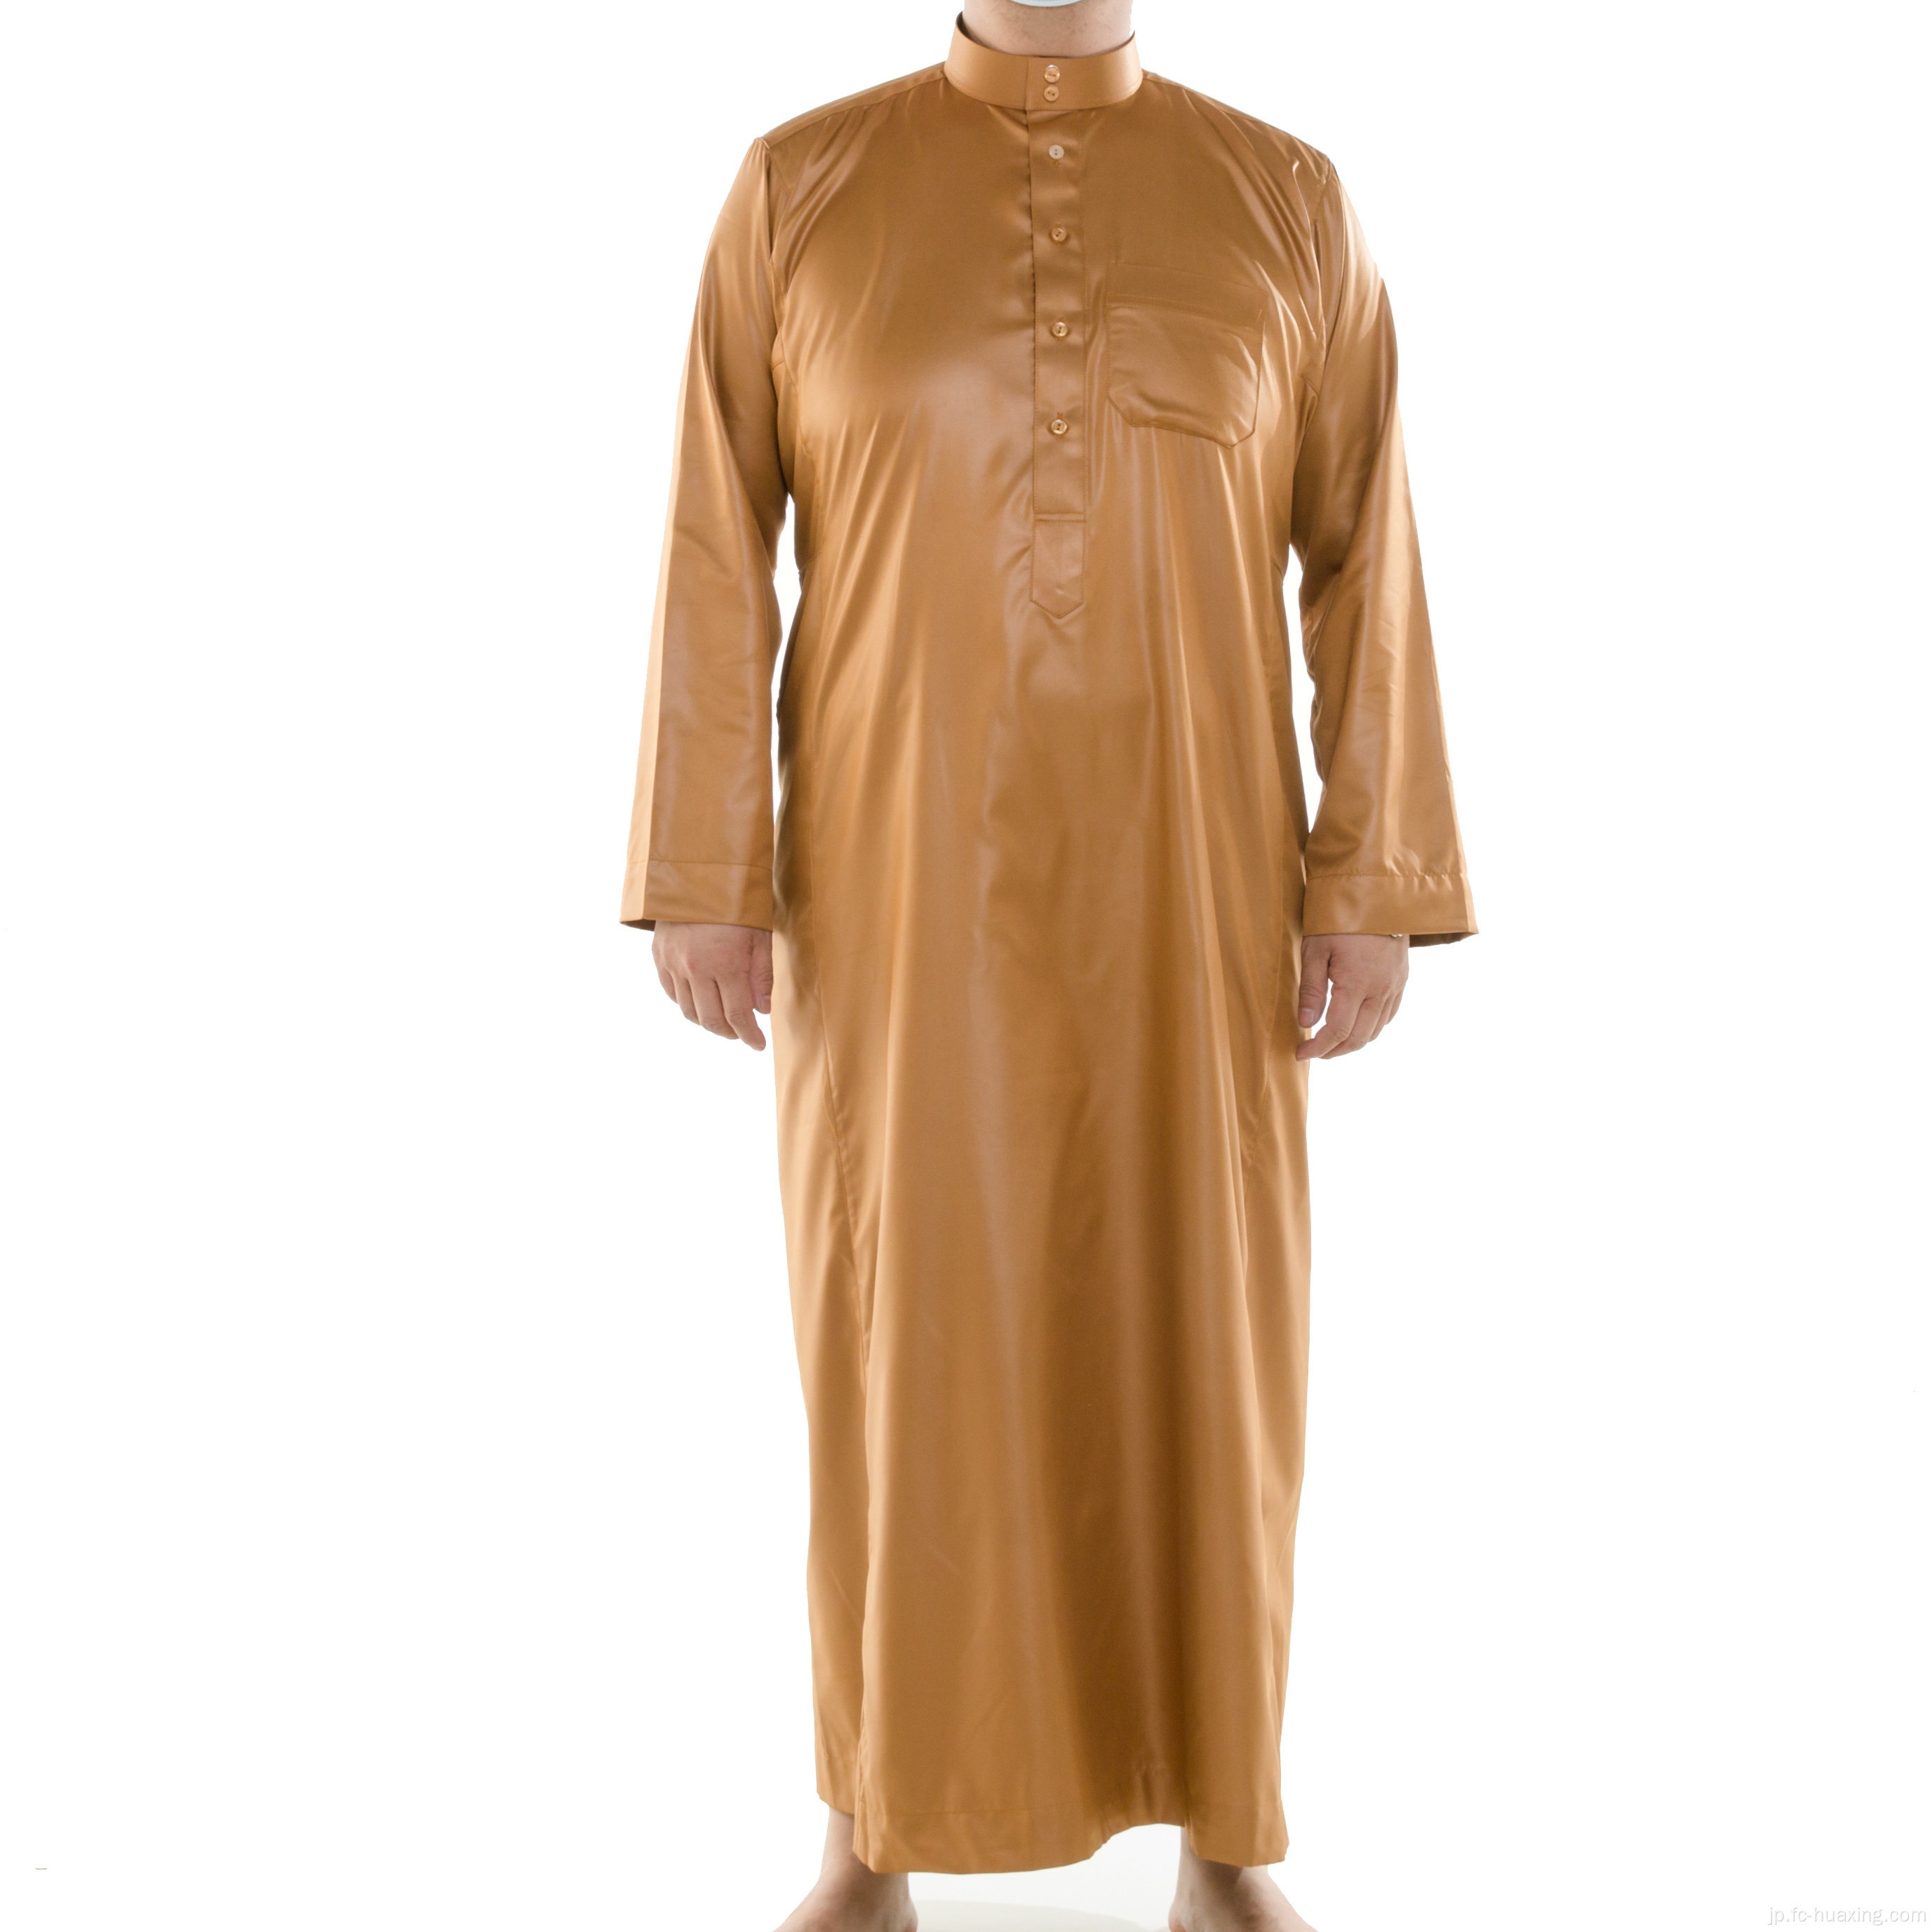 イスラムの男性はトベムスリムロングクルタを着ています